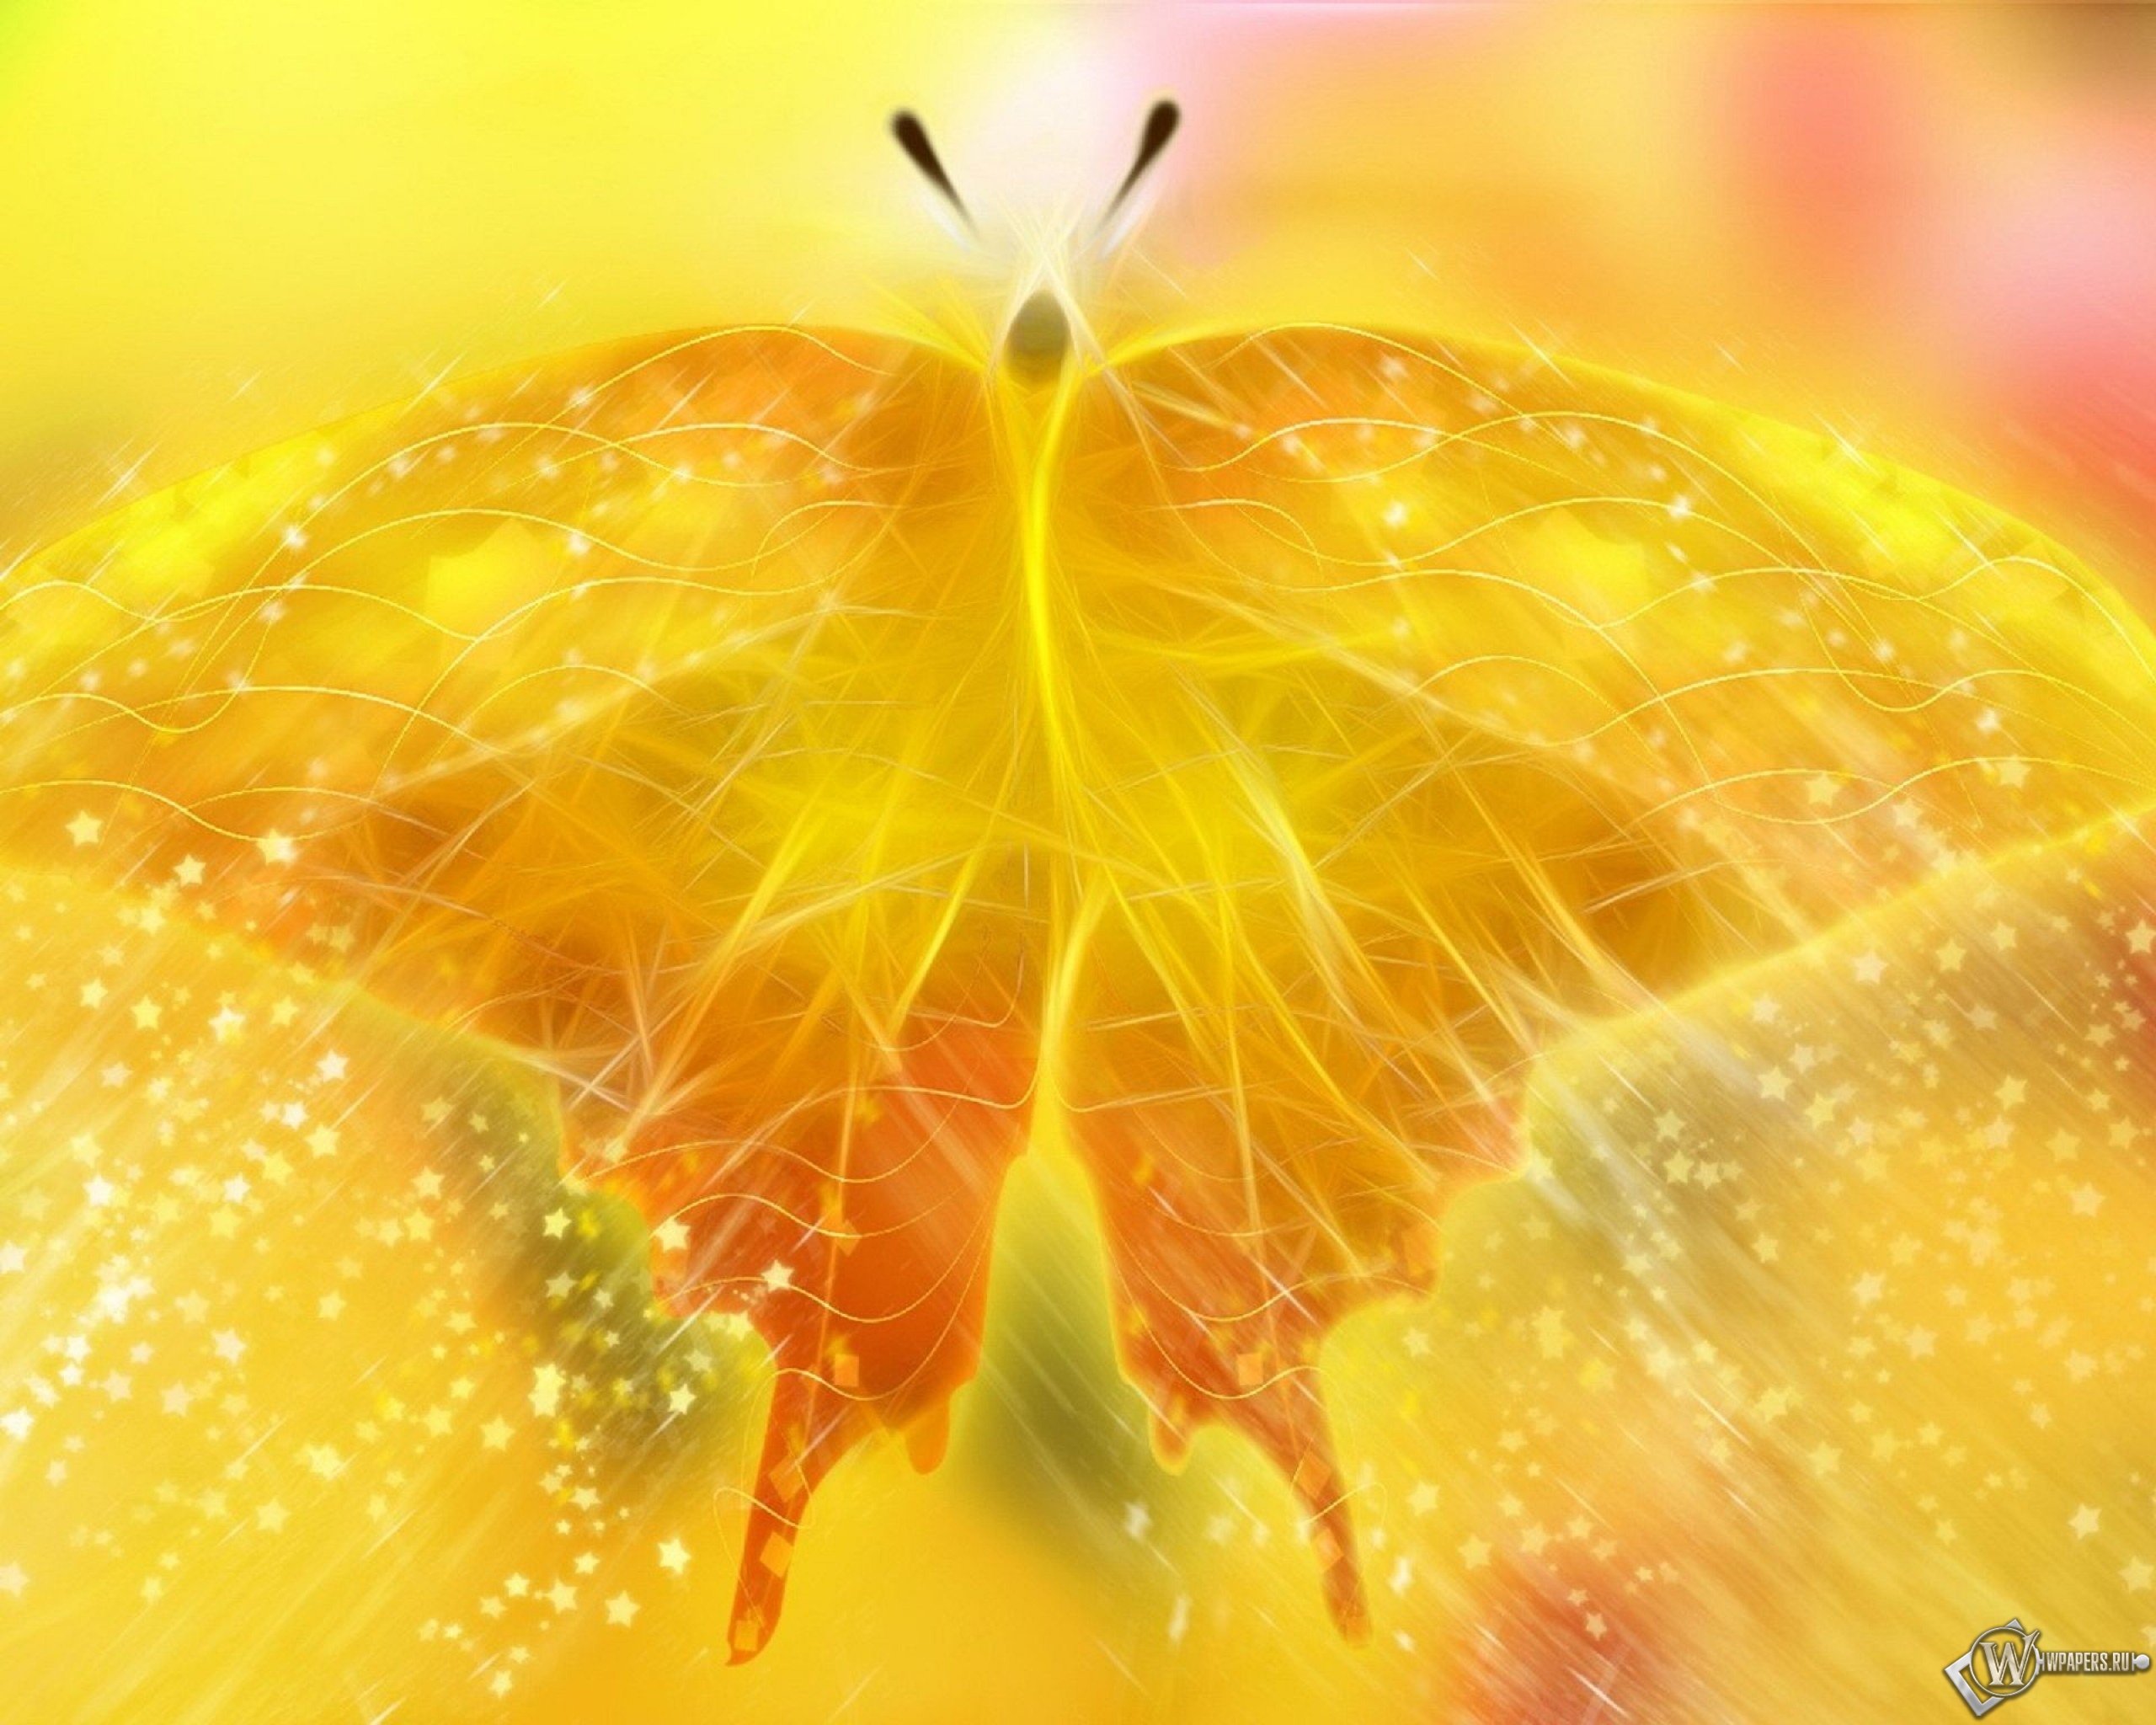 Пыльца крылья. Желтые обои. Жёлтая бабочка. Цветотерапия желтый цвет. Бабочка в лучах солнца.